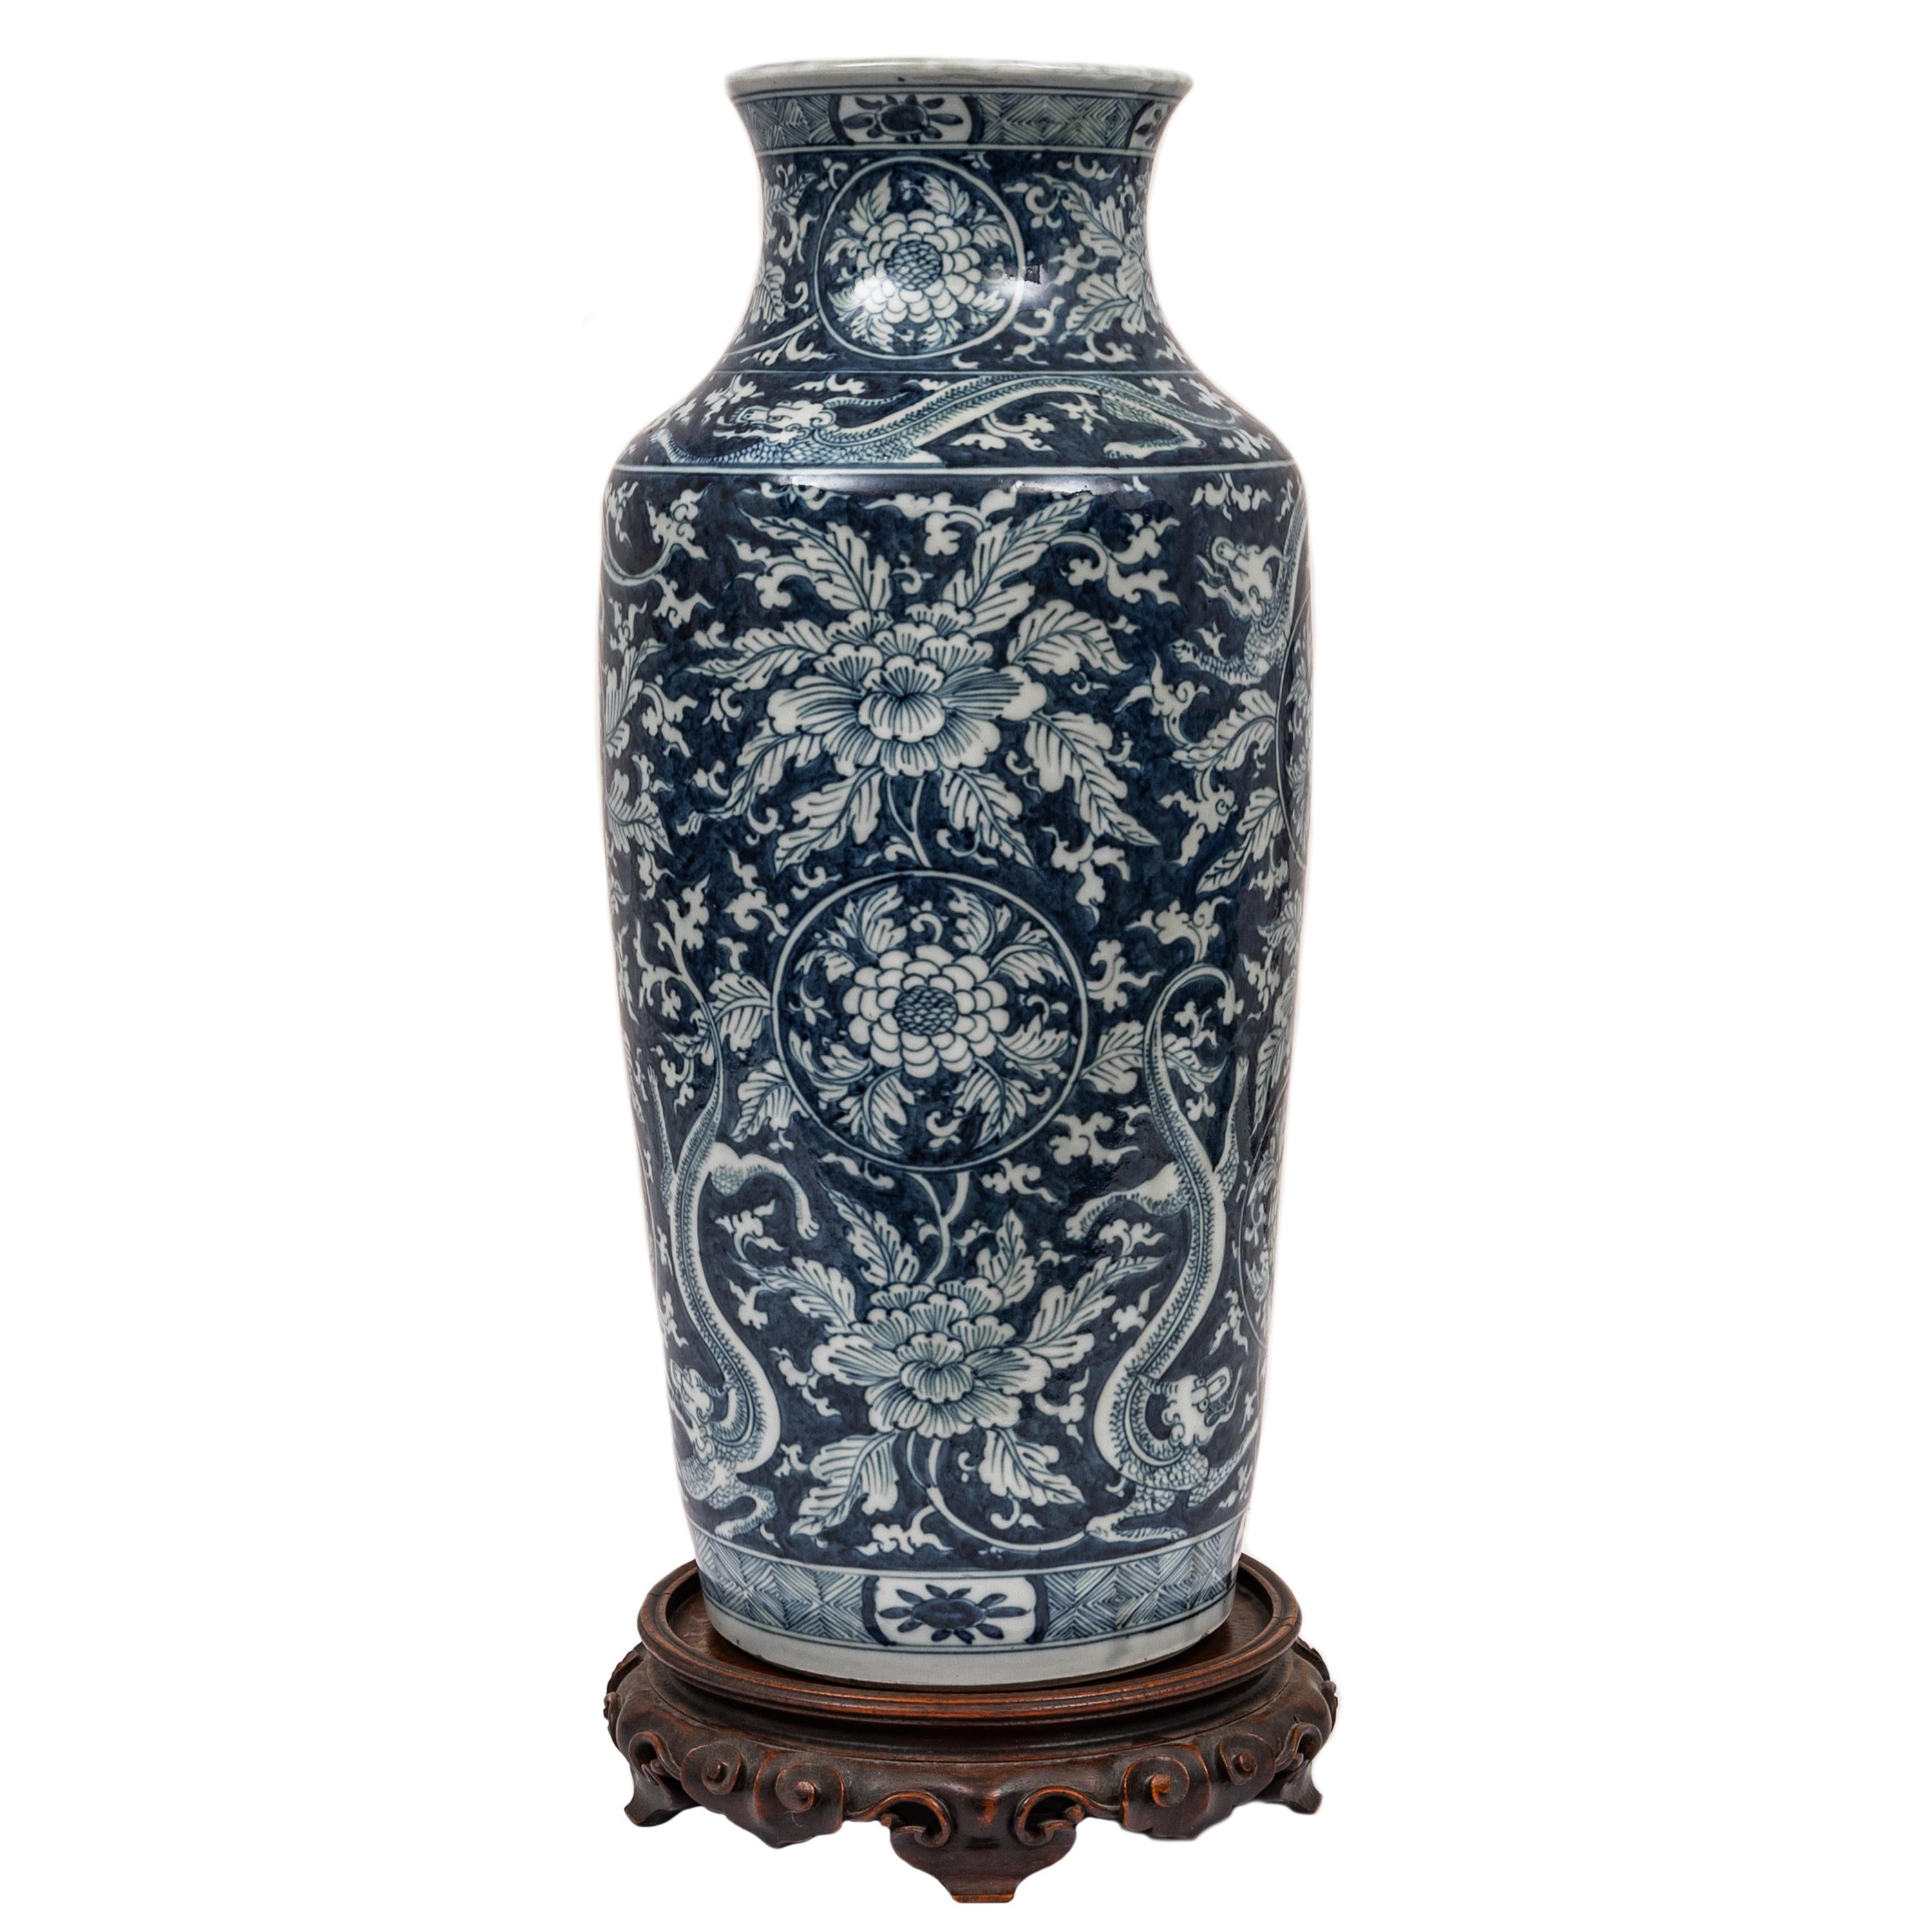 Grand et rare vase dragon Rouleau en porcelaine bleu et blanc de la dynastie Qing, période Kangxi (1662-1722), le vase datant de la fin des années 1600.
Ce vase de forme cylindrique légèrement effilée, au large col et à l'embouchure évasée, est